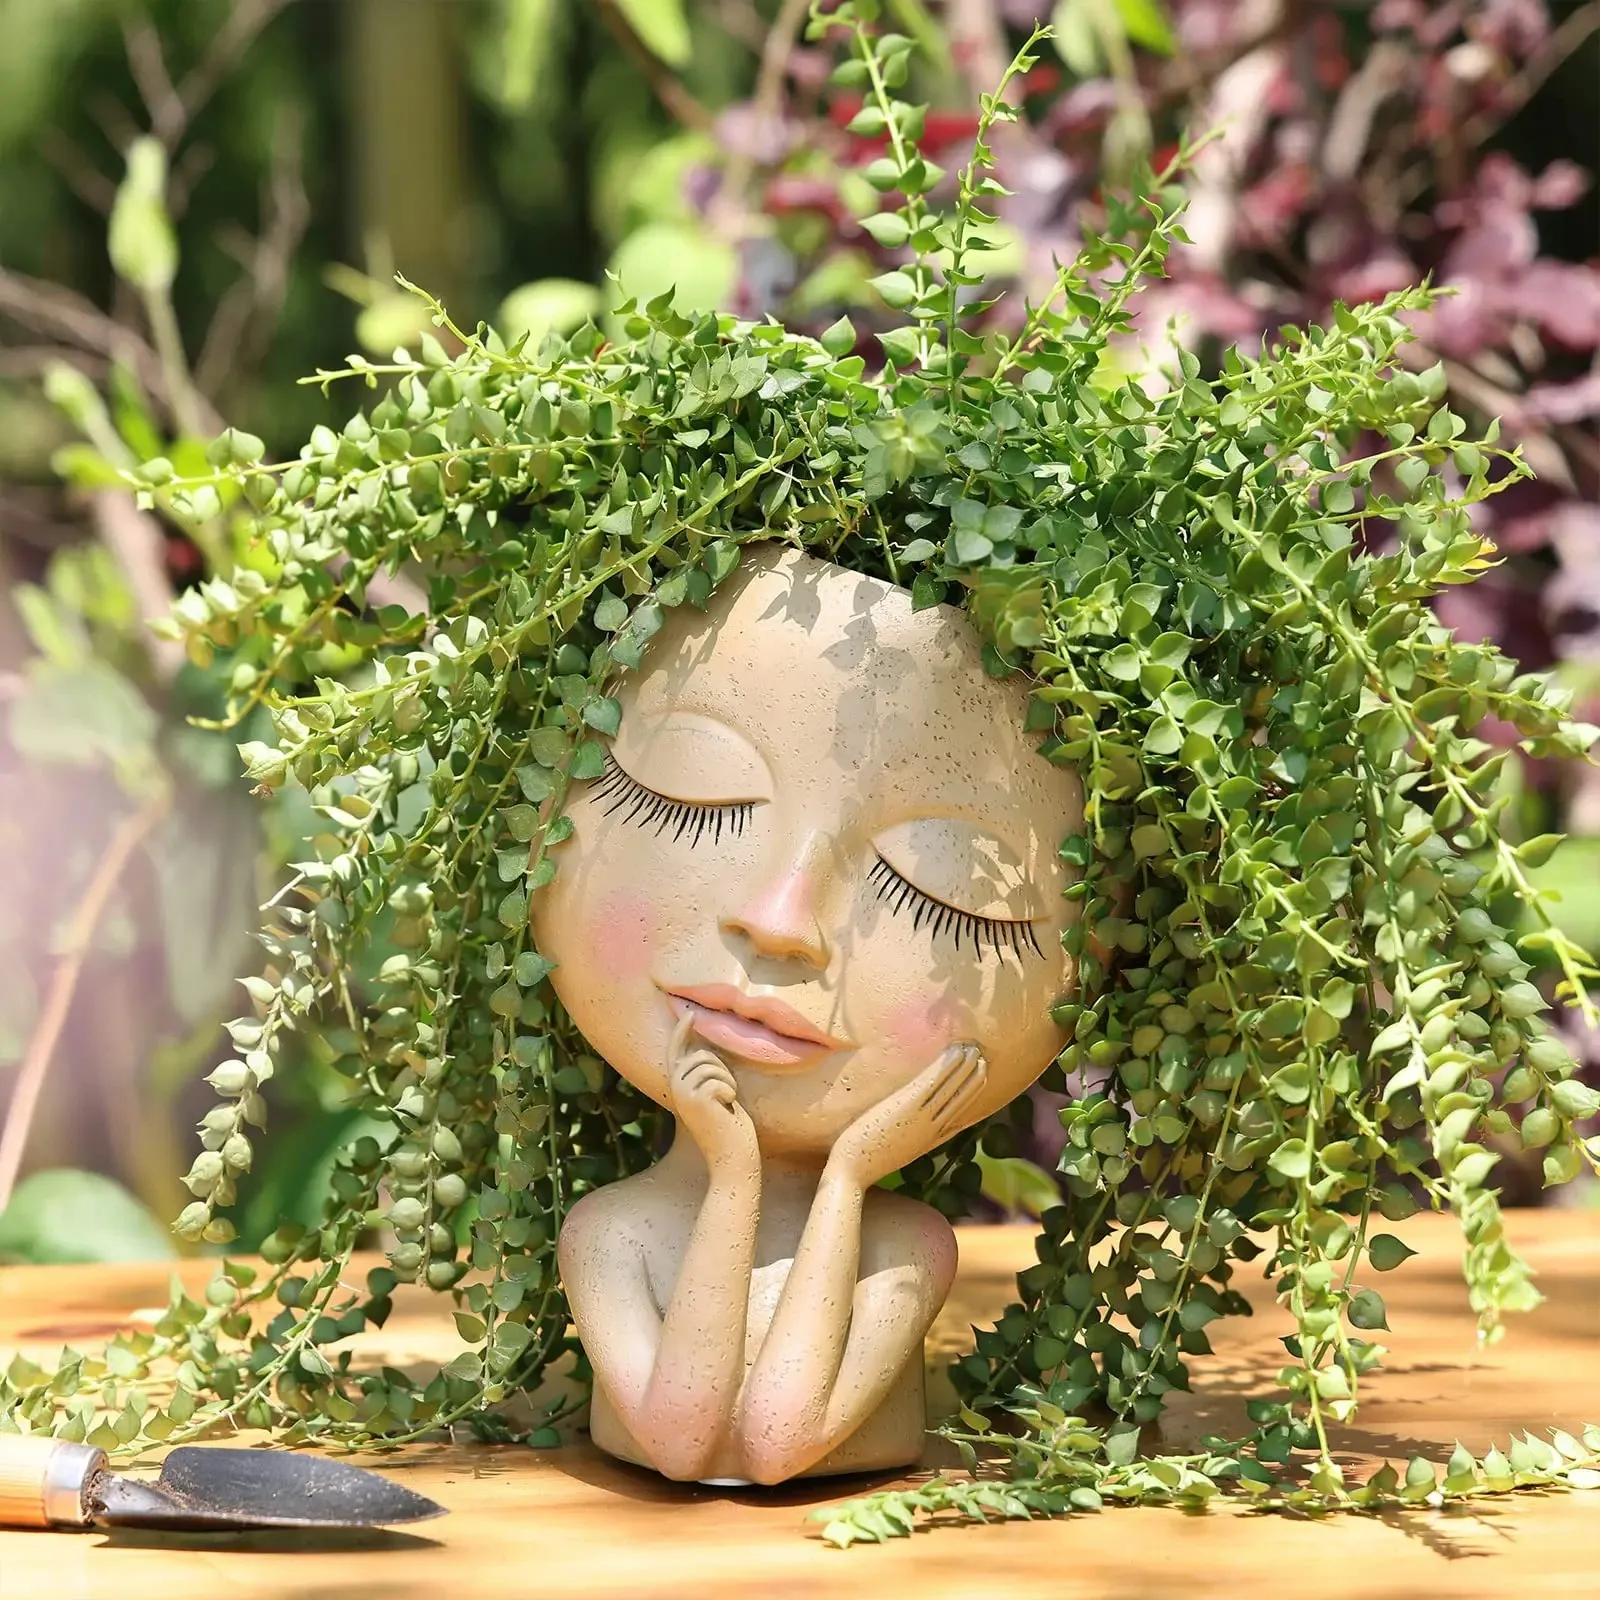 

Garden Decor Face Head Planter Succulent Plant Flower Pot Resin Container With Drain Holes Flowerpot Figure Tabletop Ornament